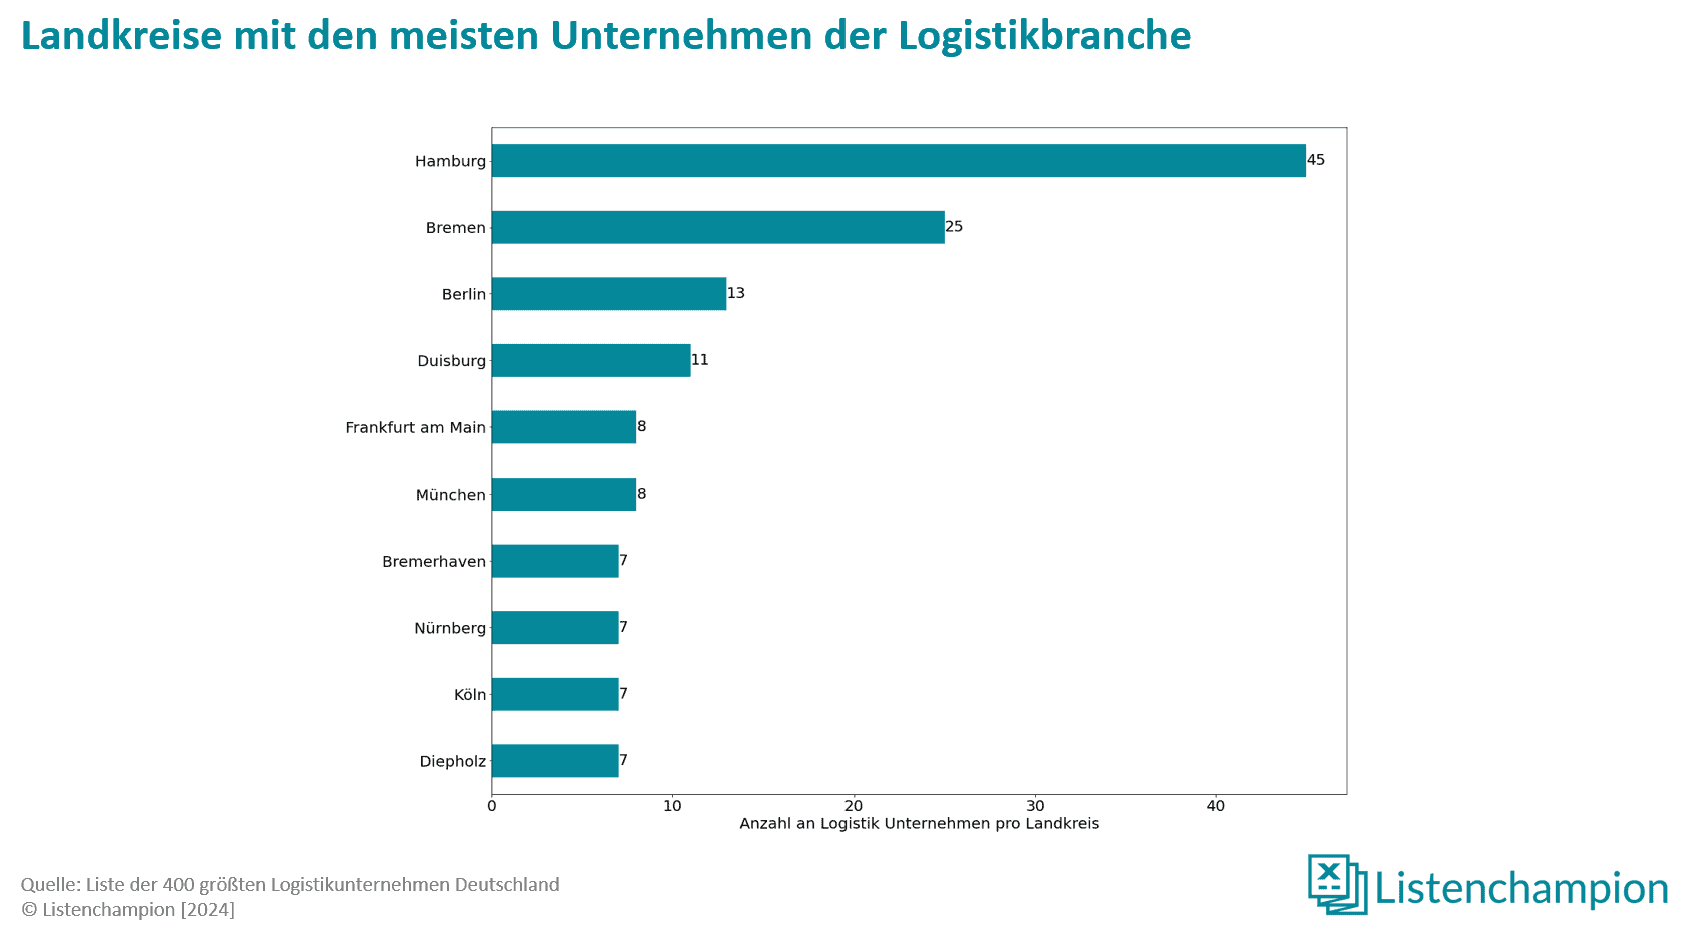 bedeutendste landkreise für die deutsche logistikbranche